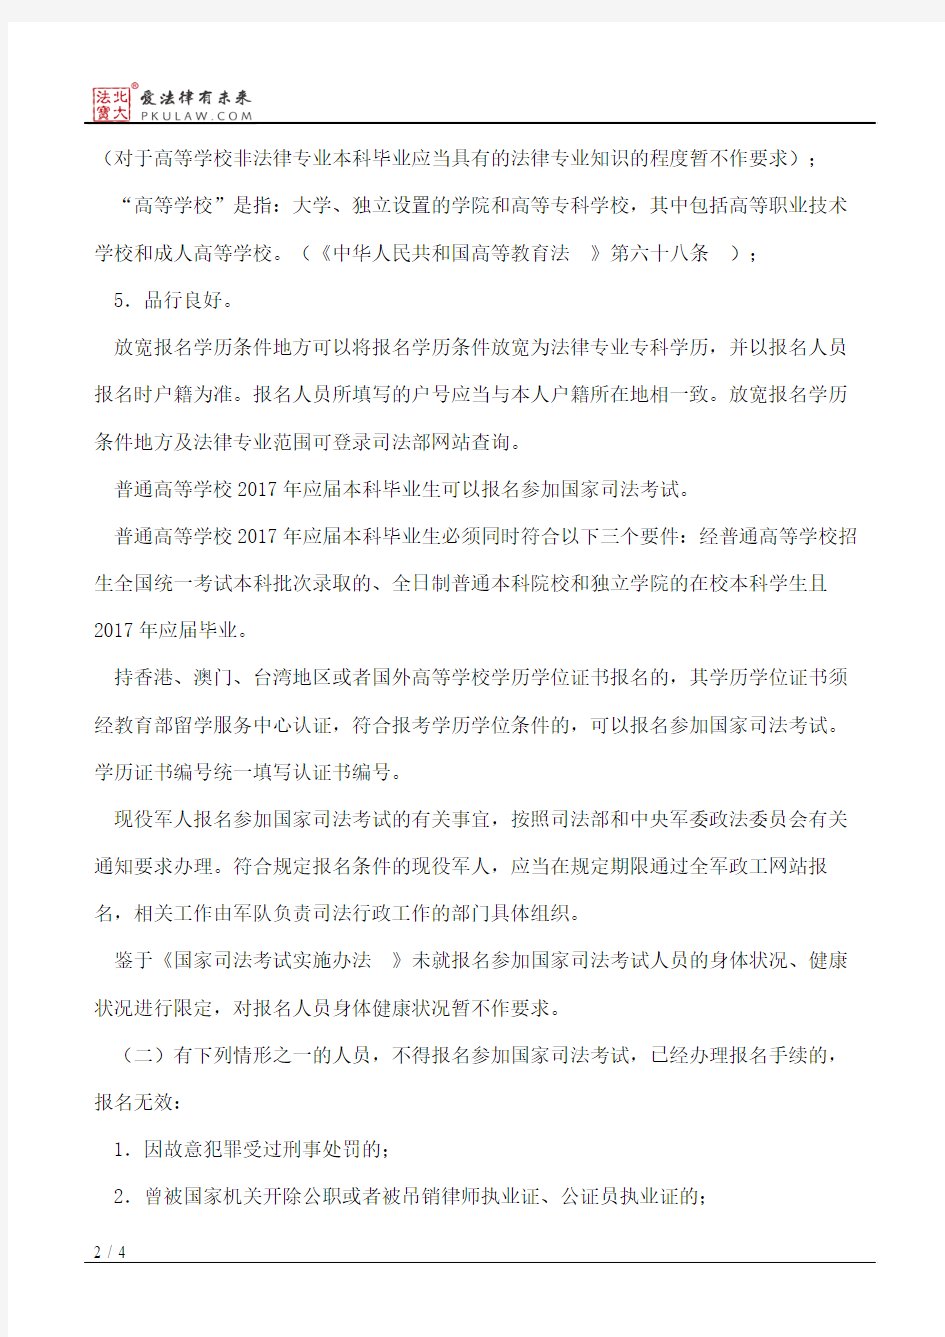 上海市司法局关于2016年国家司法考试上海考区有关事项的公告